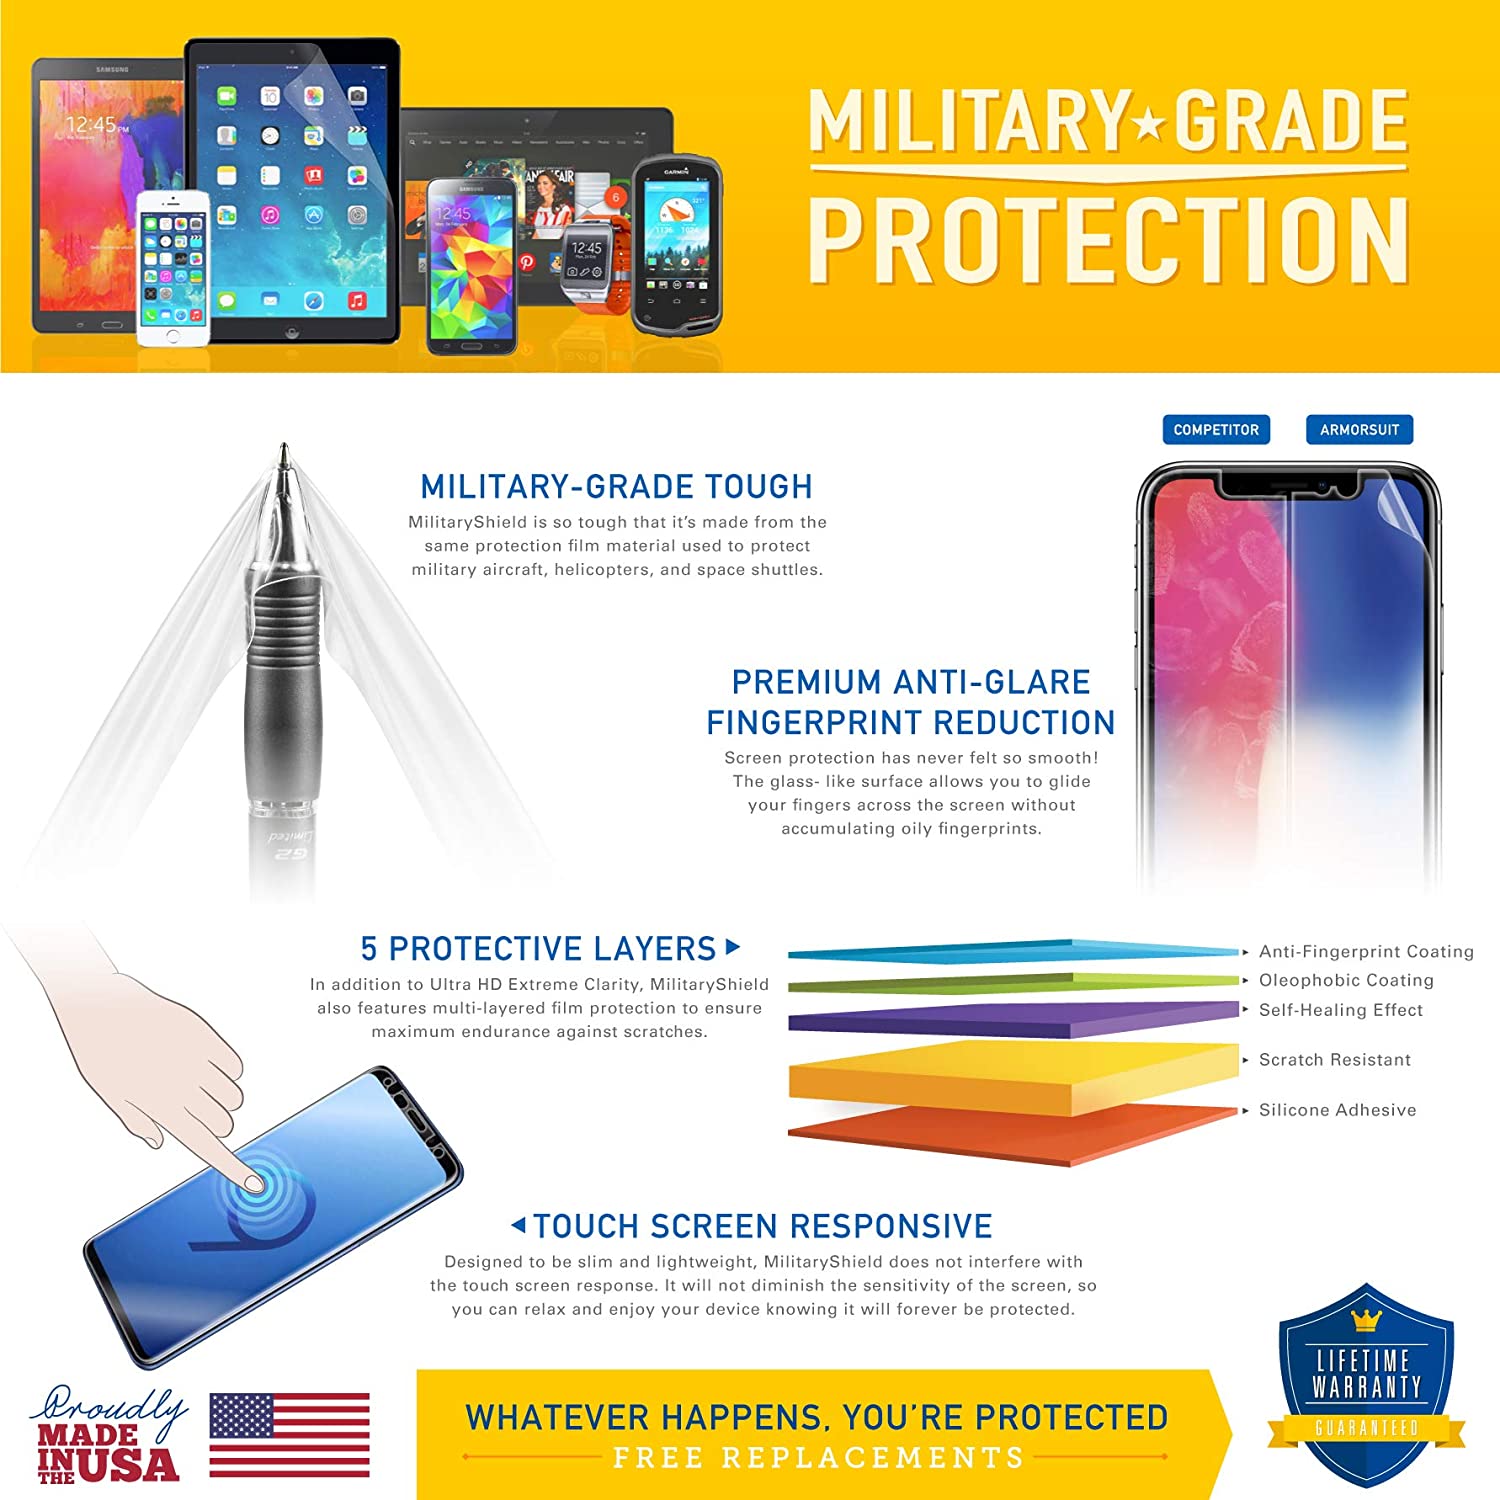 Samsung Galaxy Tab 3 10.1 Screen Protector